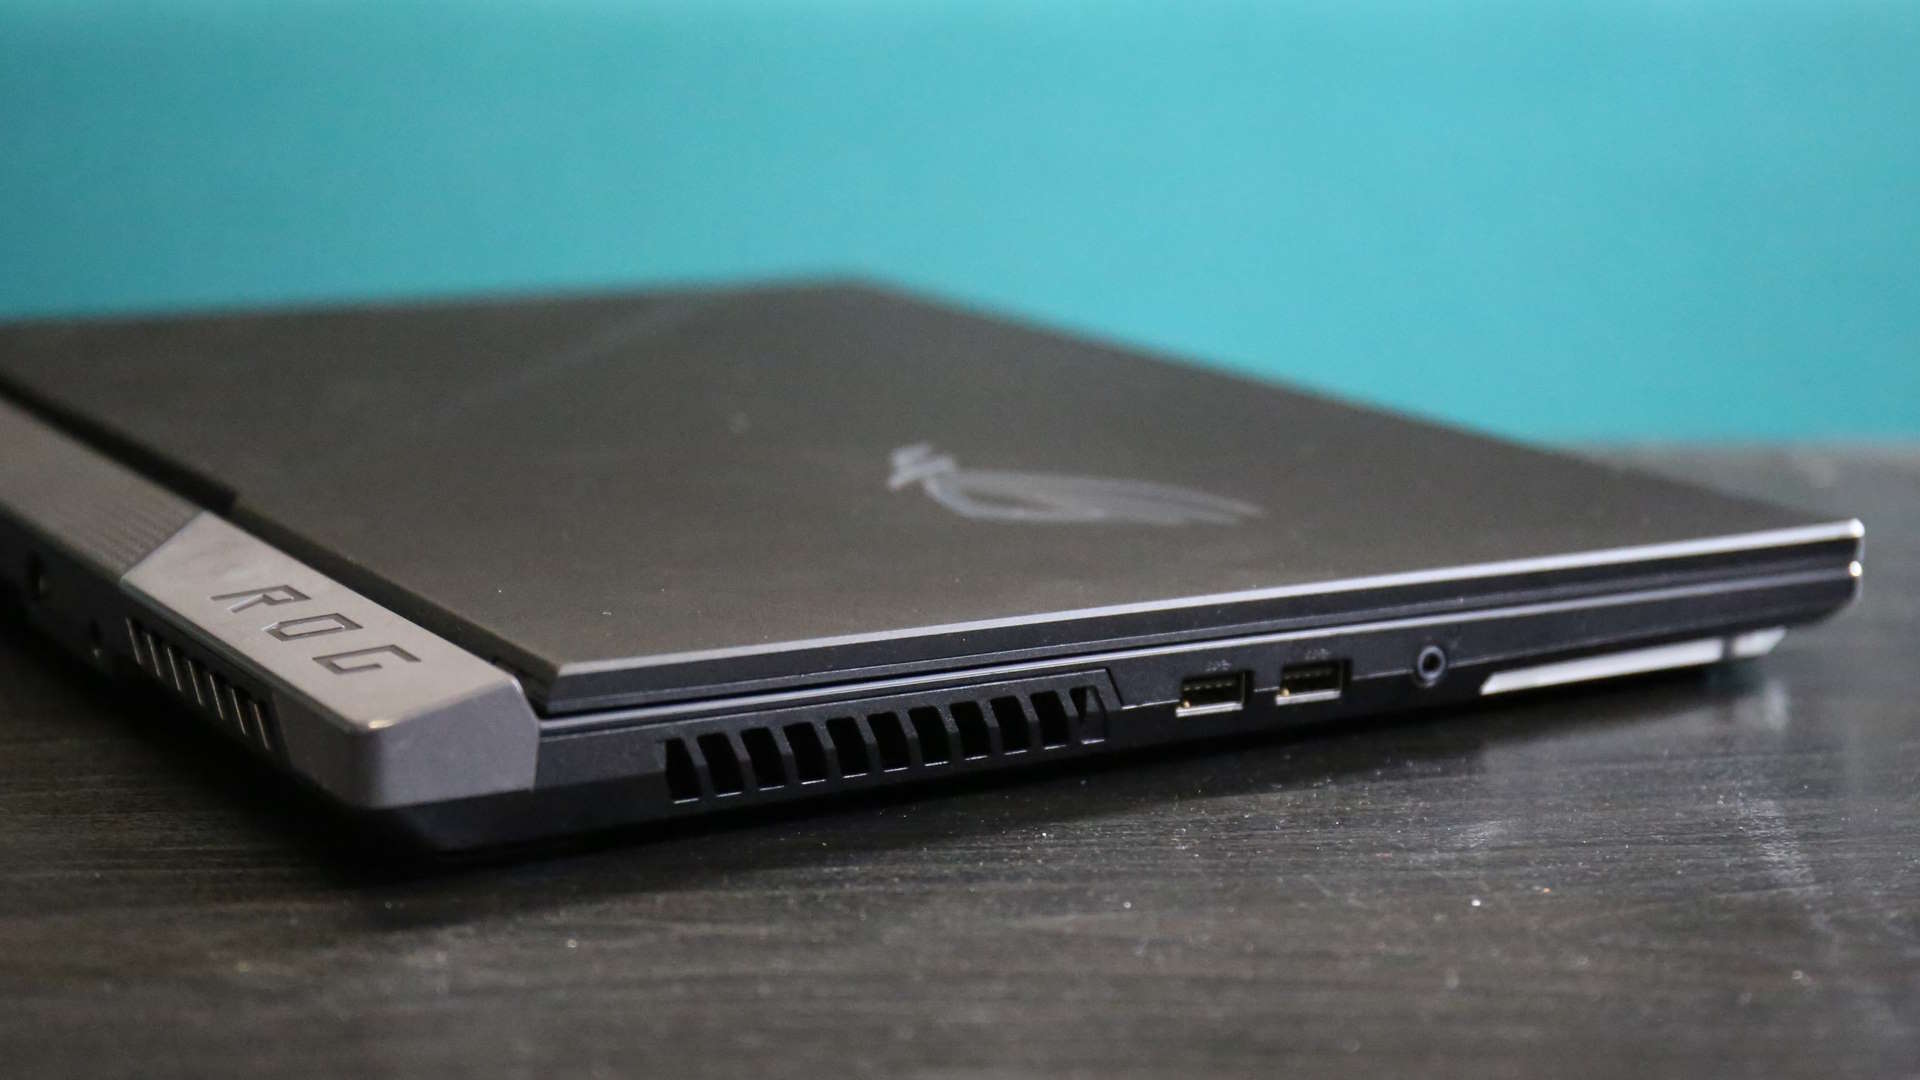 Asus ROG Strix Scar 17 gaming laptop